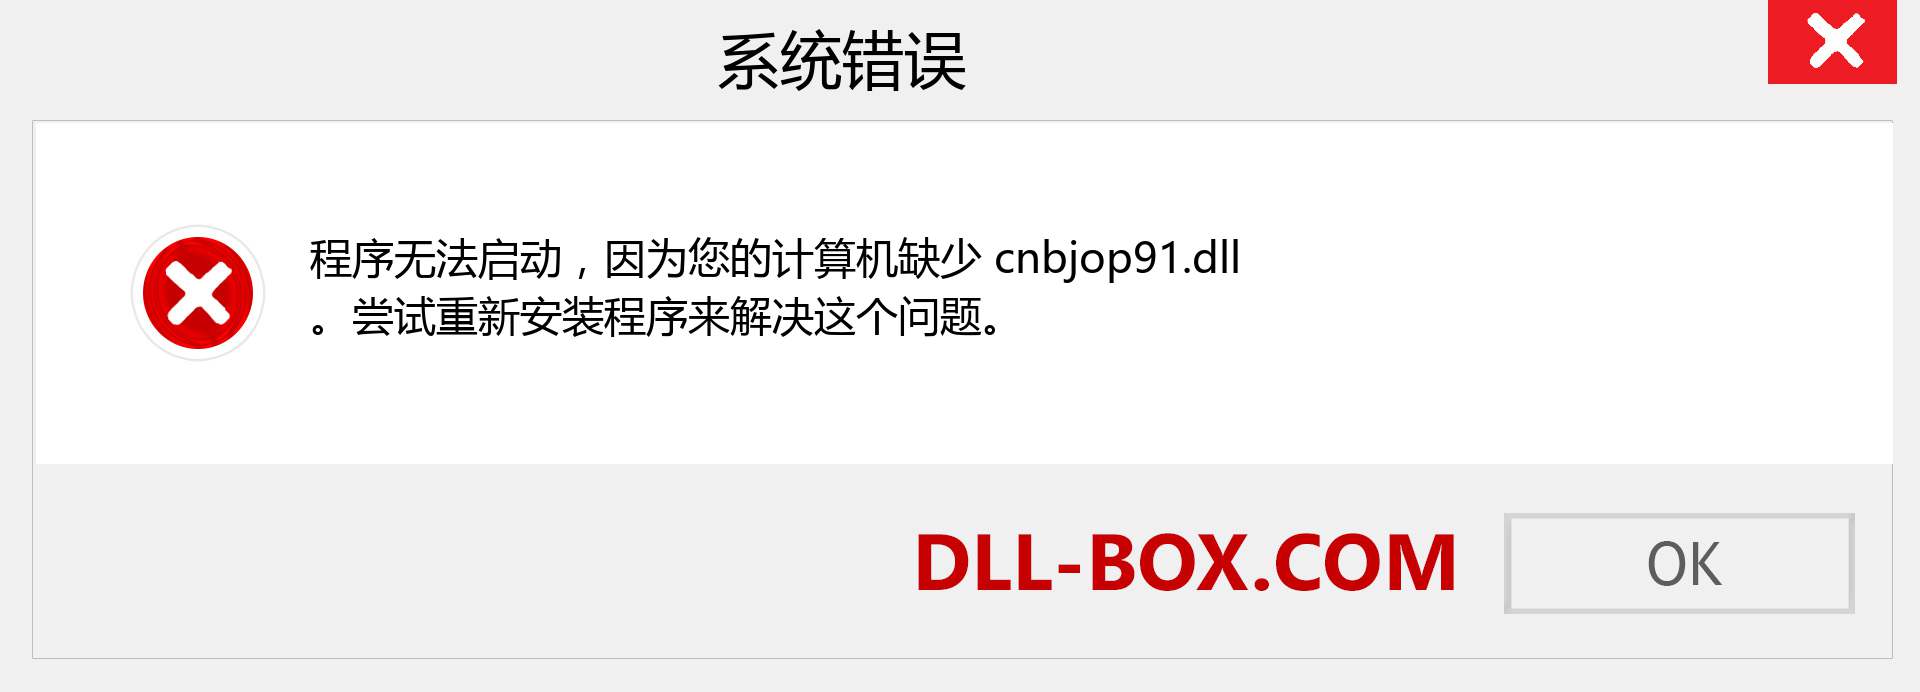 cnbjop91.dll 文件丢失？。 适用于 Windows 7、8、10 的下载 - 修复 Windows、照片、图像上的 cnbjop91 dll 丢失错误